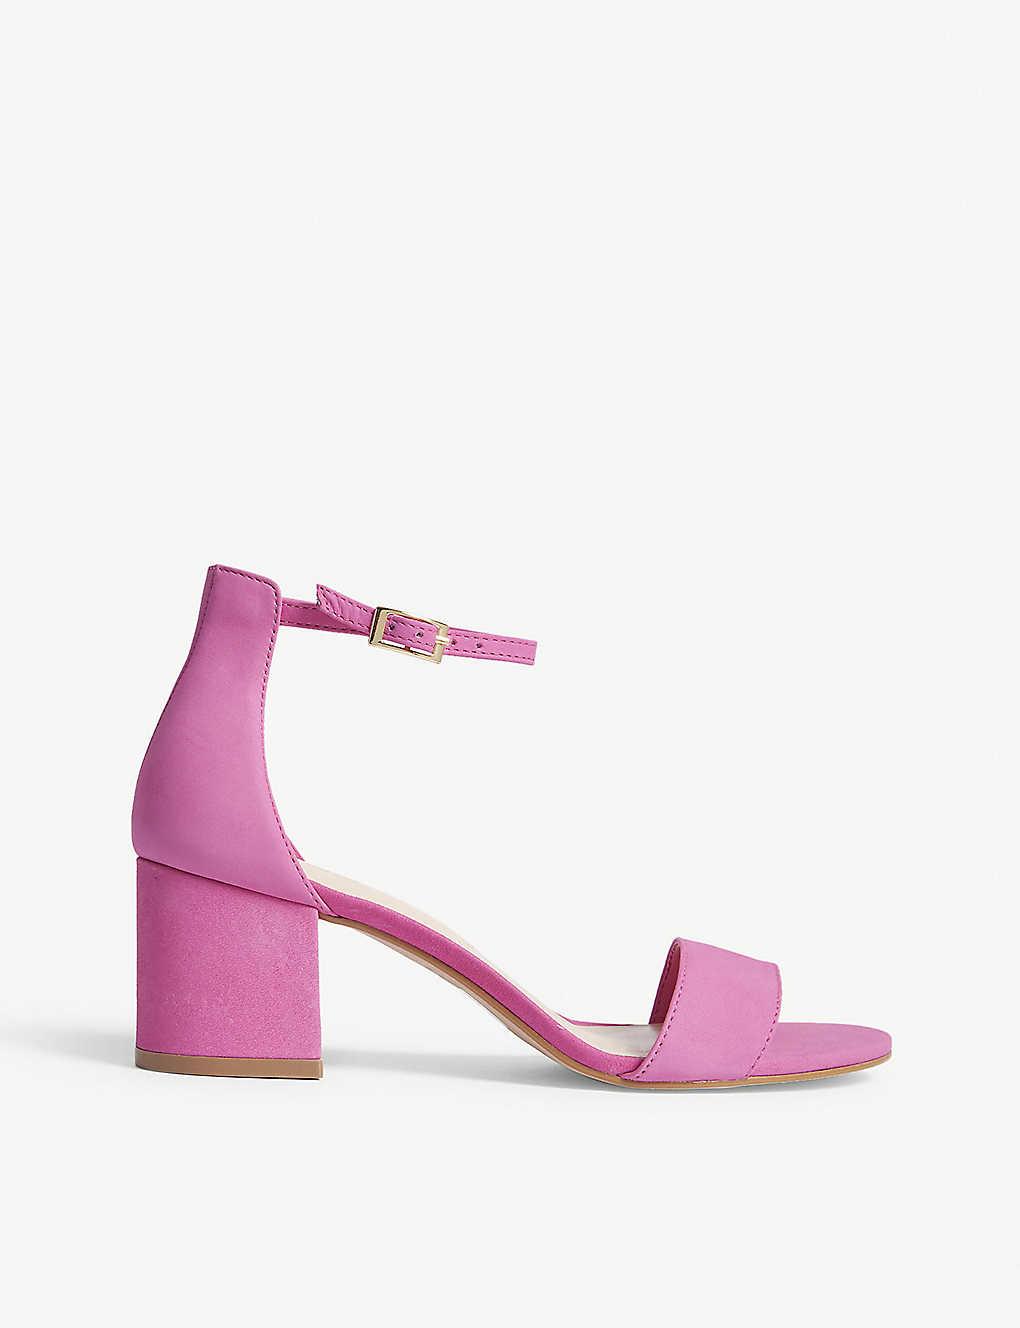 ALDO Villarosa Suede Sandals in (Pink) Lyst